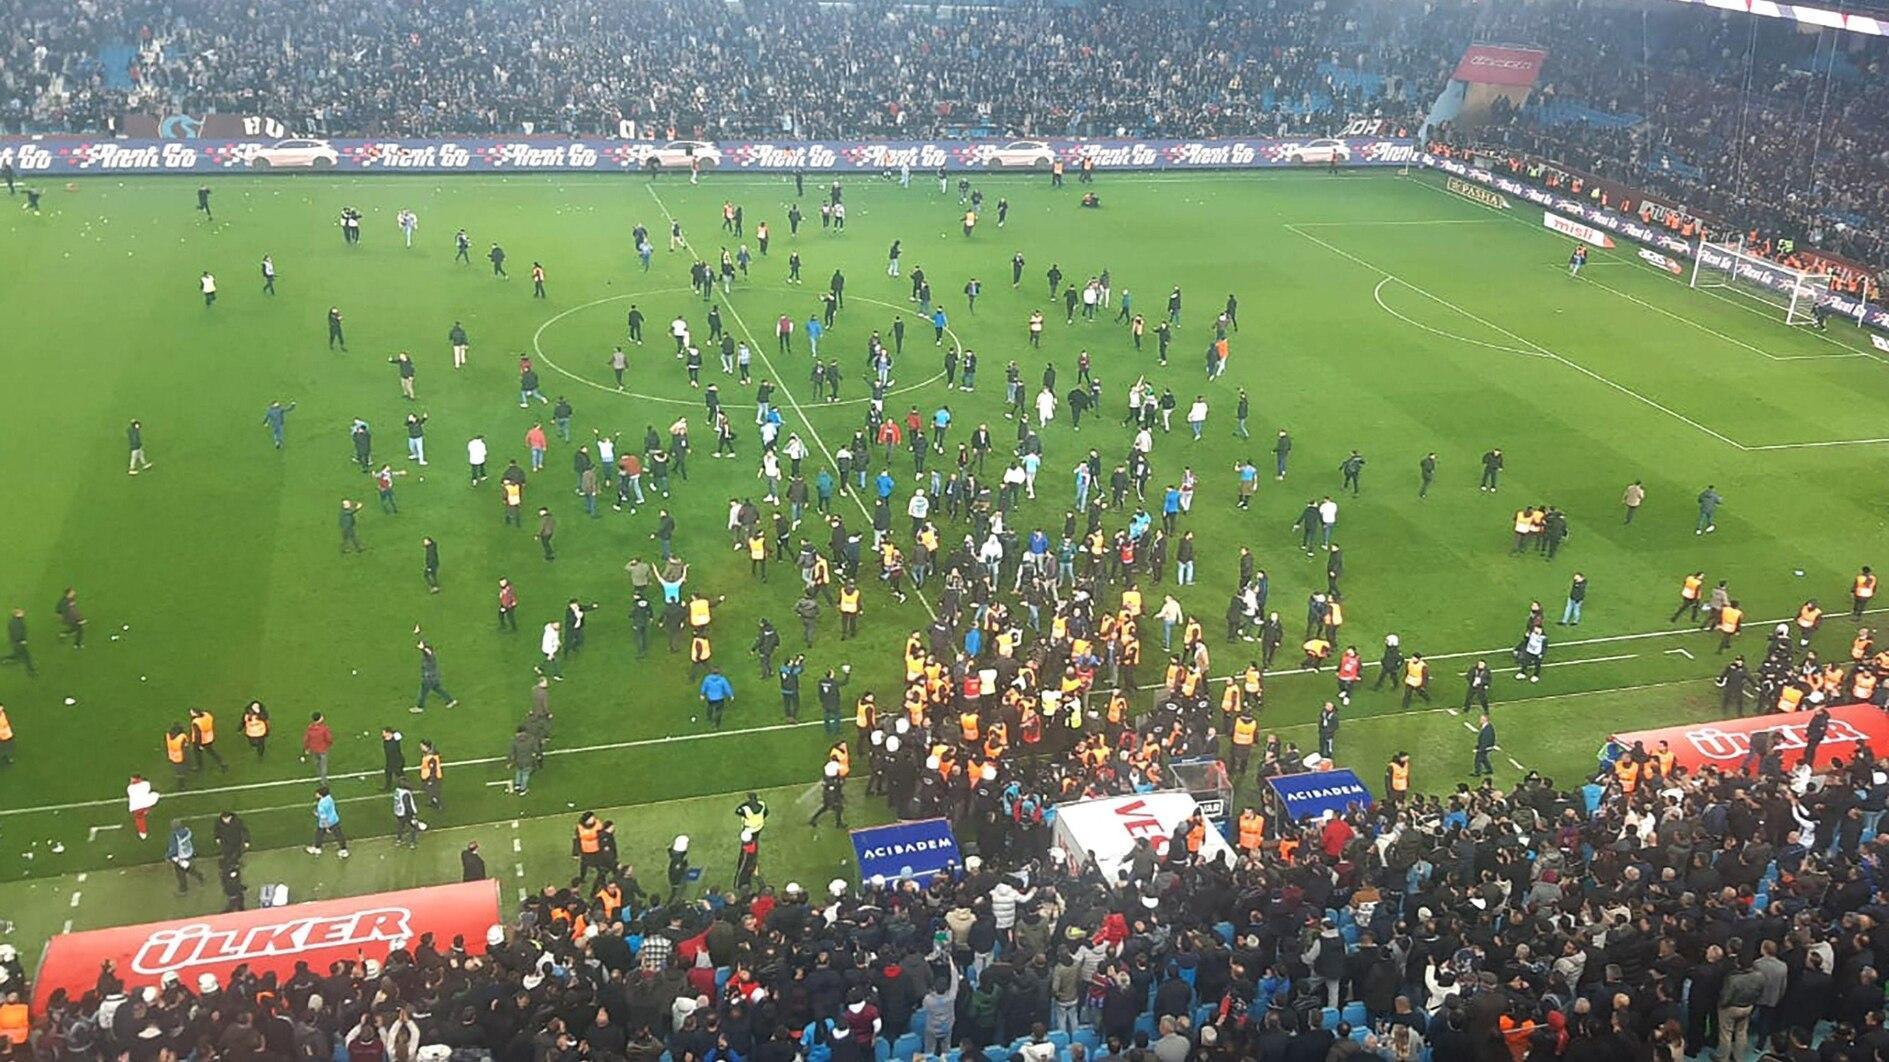 Geweld overschaduwt de wedstrijd in de Süper Lig